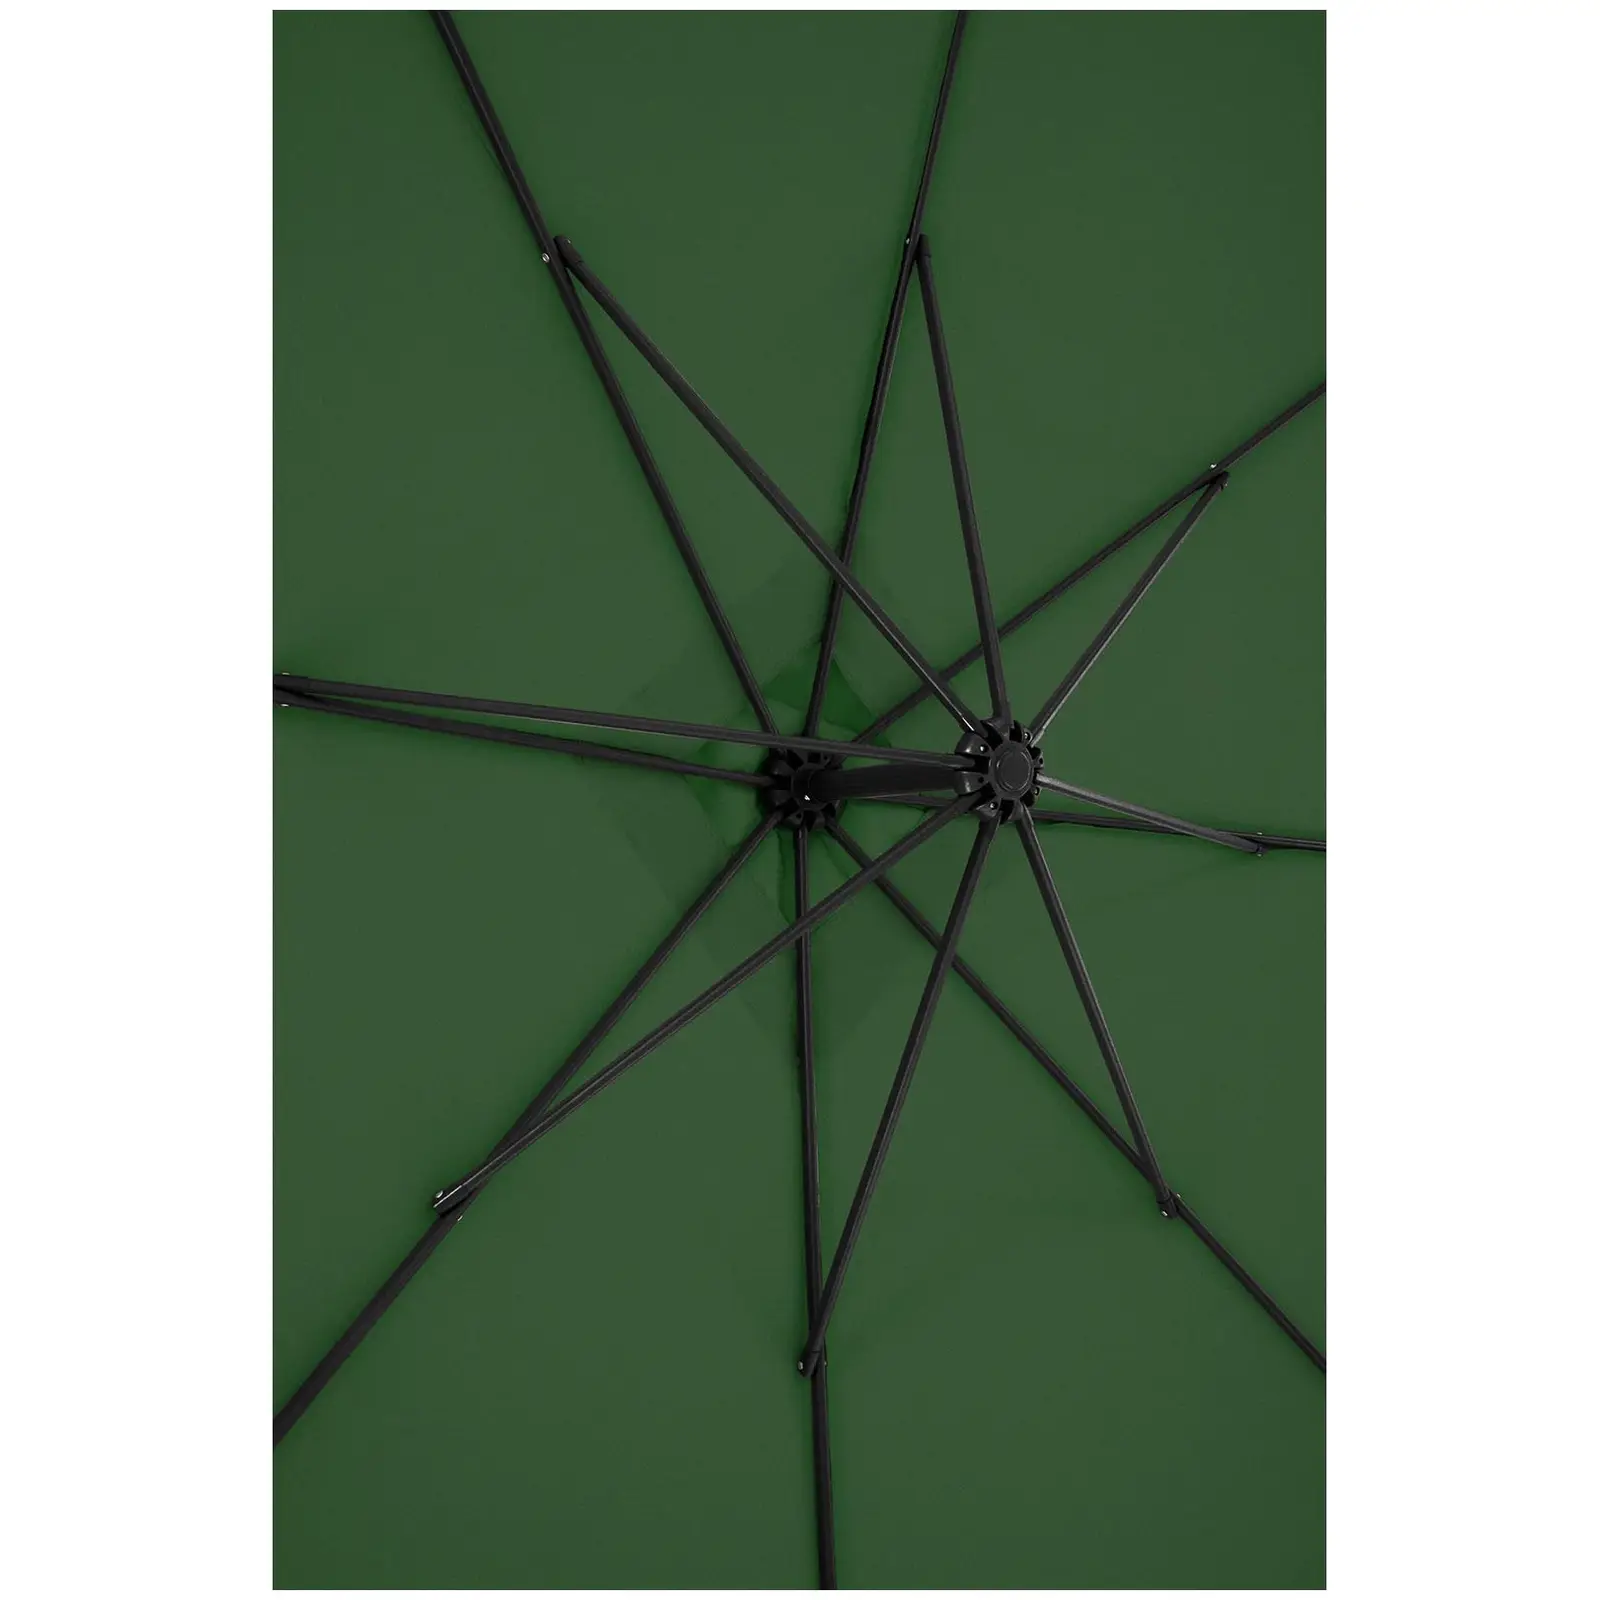 Parasol déporté - Vert - Rectangulaire - 250 x 250 cm - Inclinable